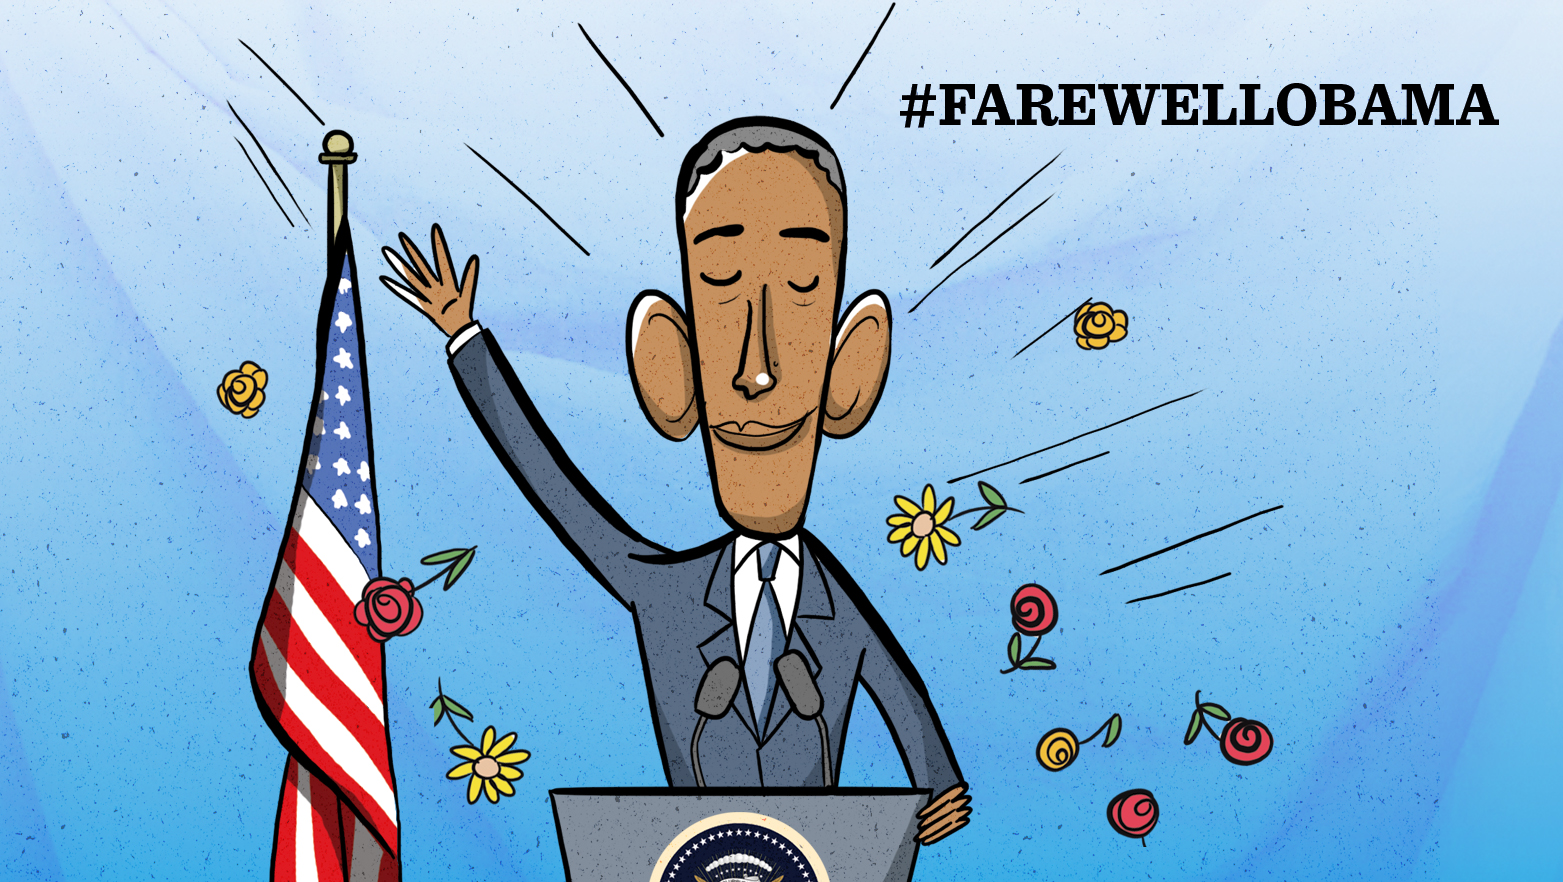 Obama's farewell speech